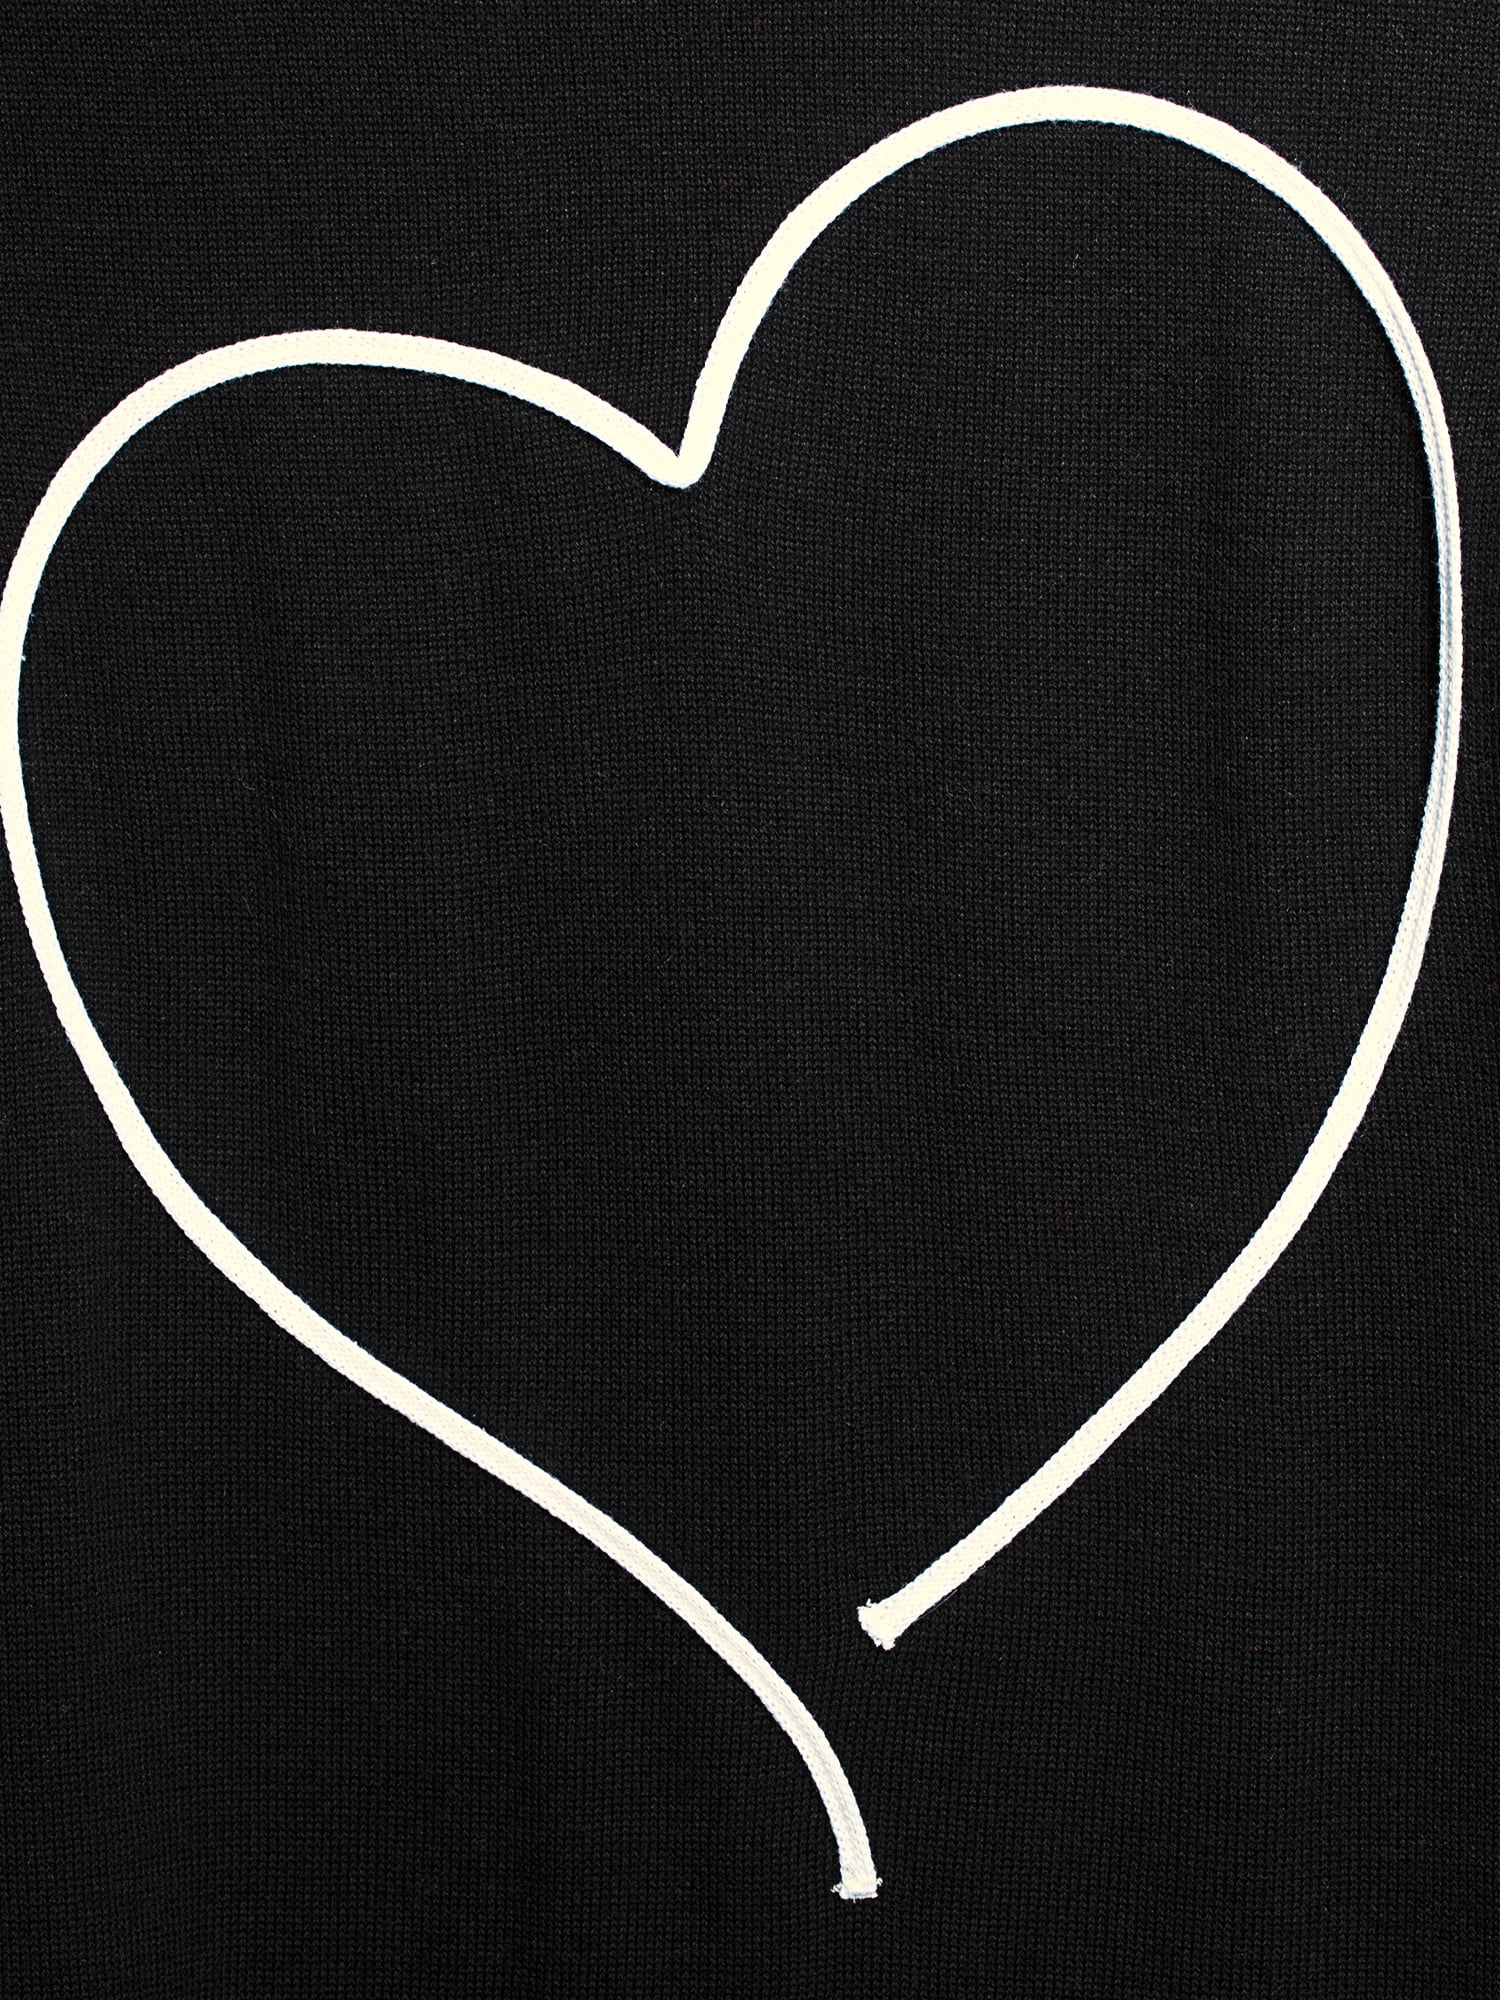 Tình yêu và sự lãng mạn cùng Time and Tru hợp tác tạo nên một chiếc áo len trái tim đáng yêu. Không chỉ thế, sản phẩm này sẽ giữ bạn ấm cúng trong những ngày se lạnh và còn có thể được mua trực tuyến tại Walmart.com.